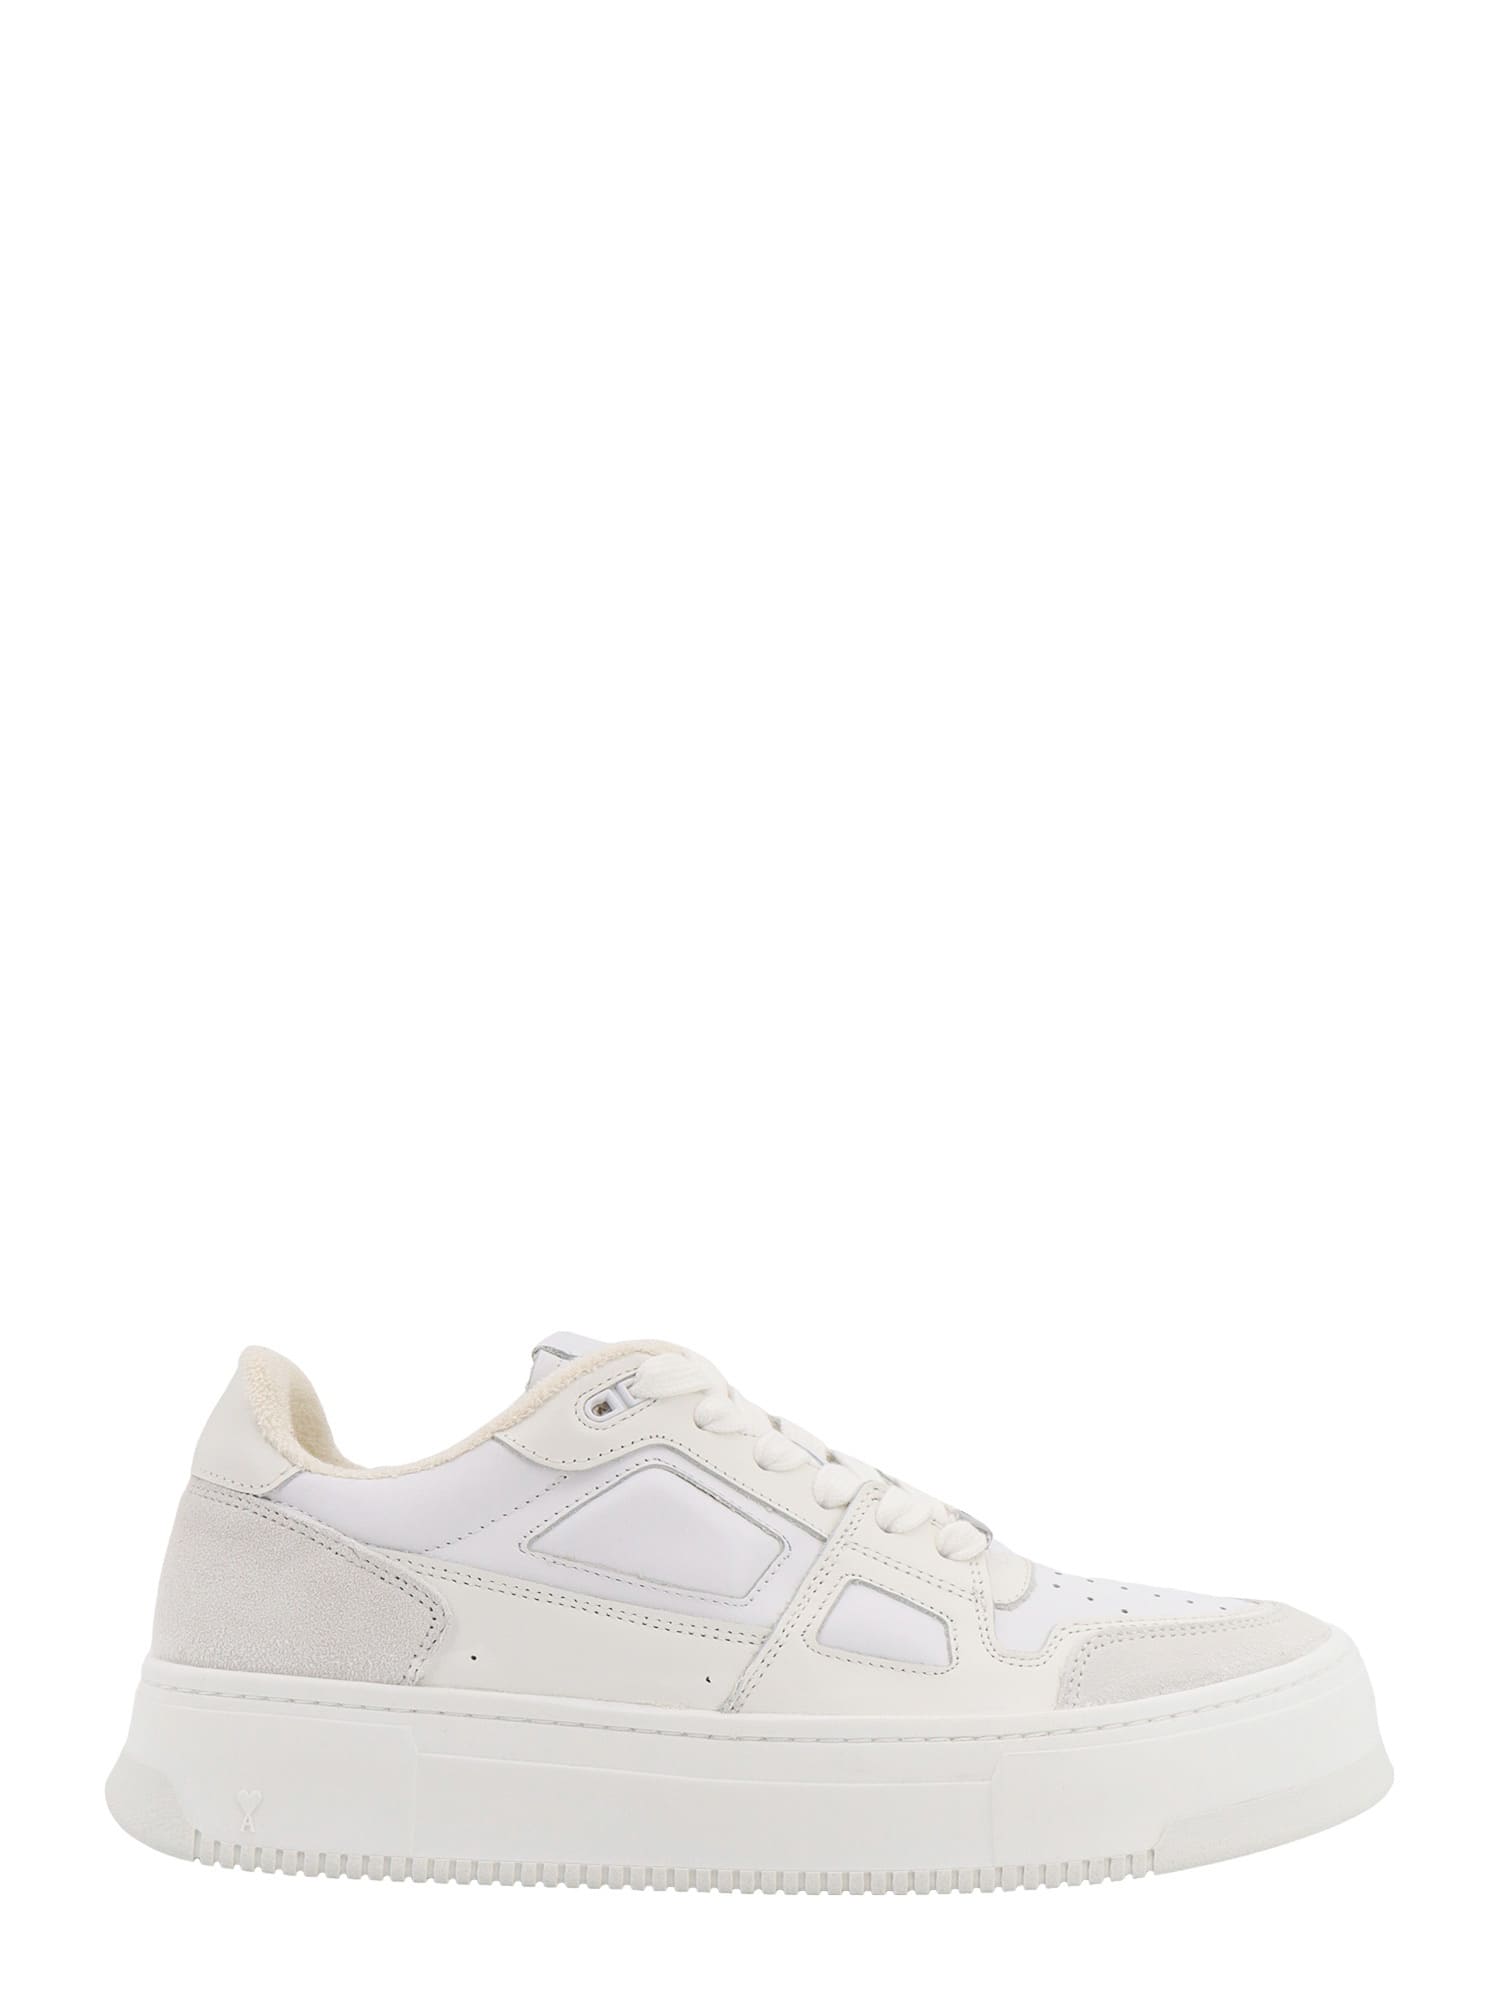 Ami Alexandre Mattiussi New Arcade Sneakers In White